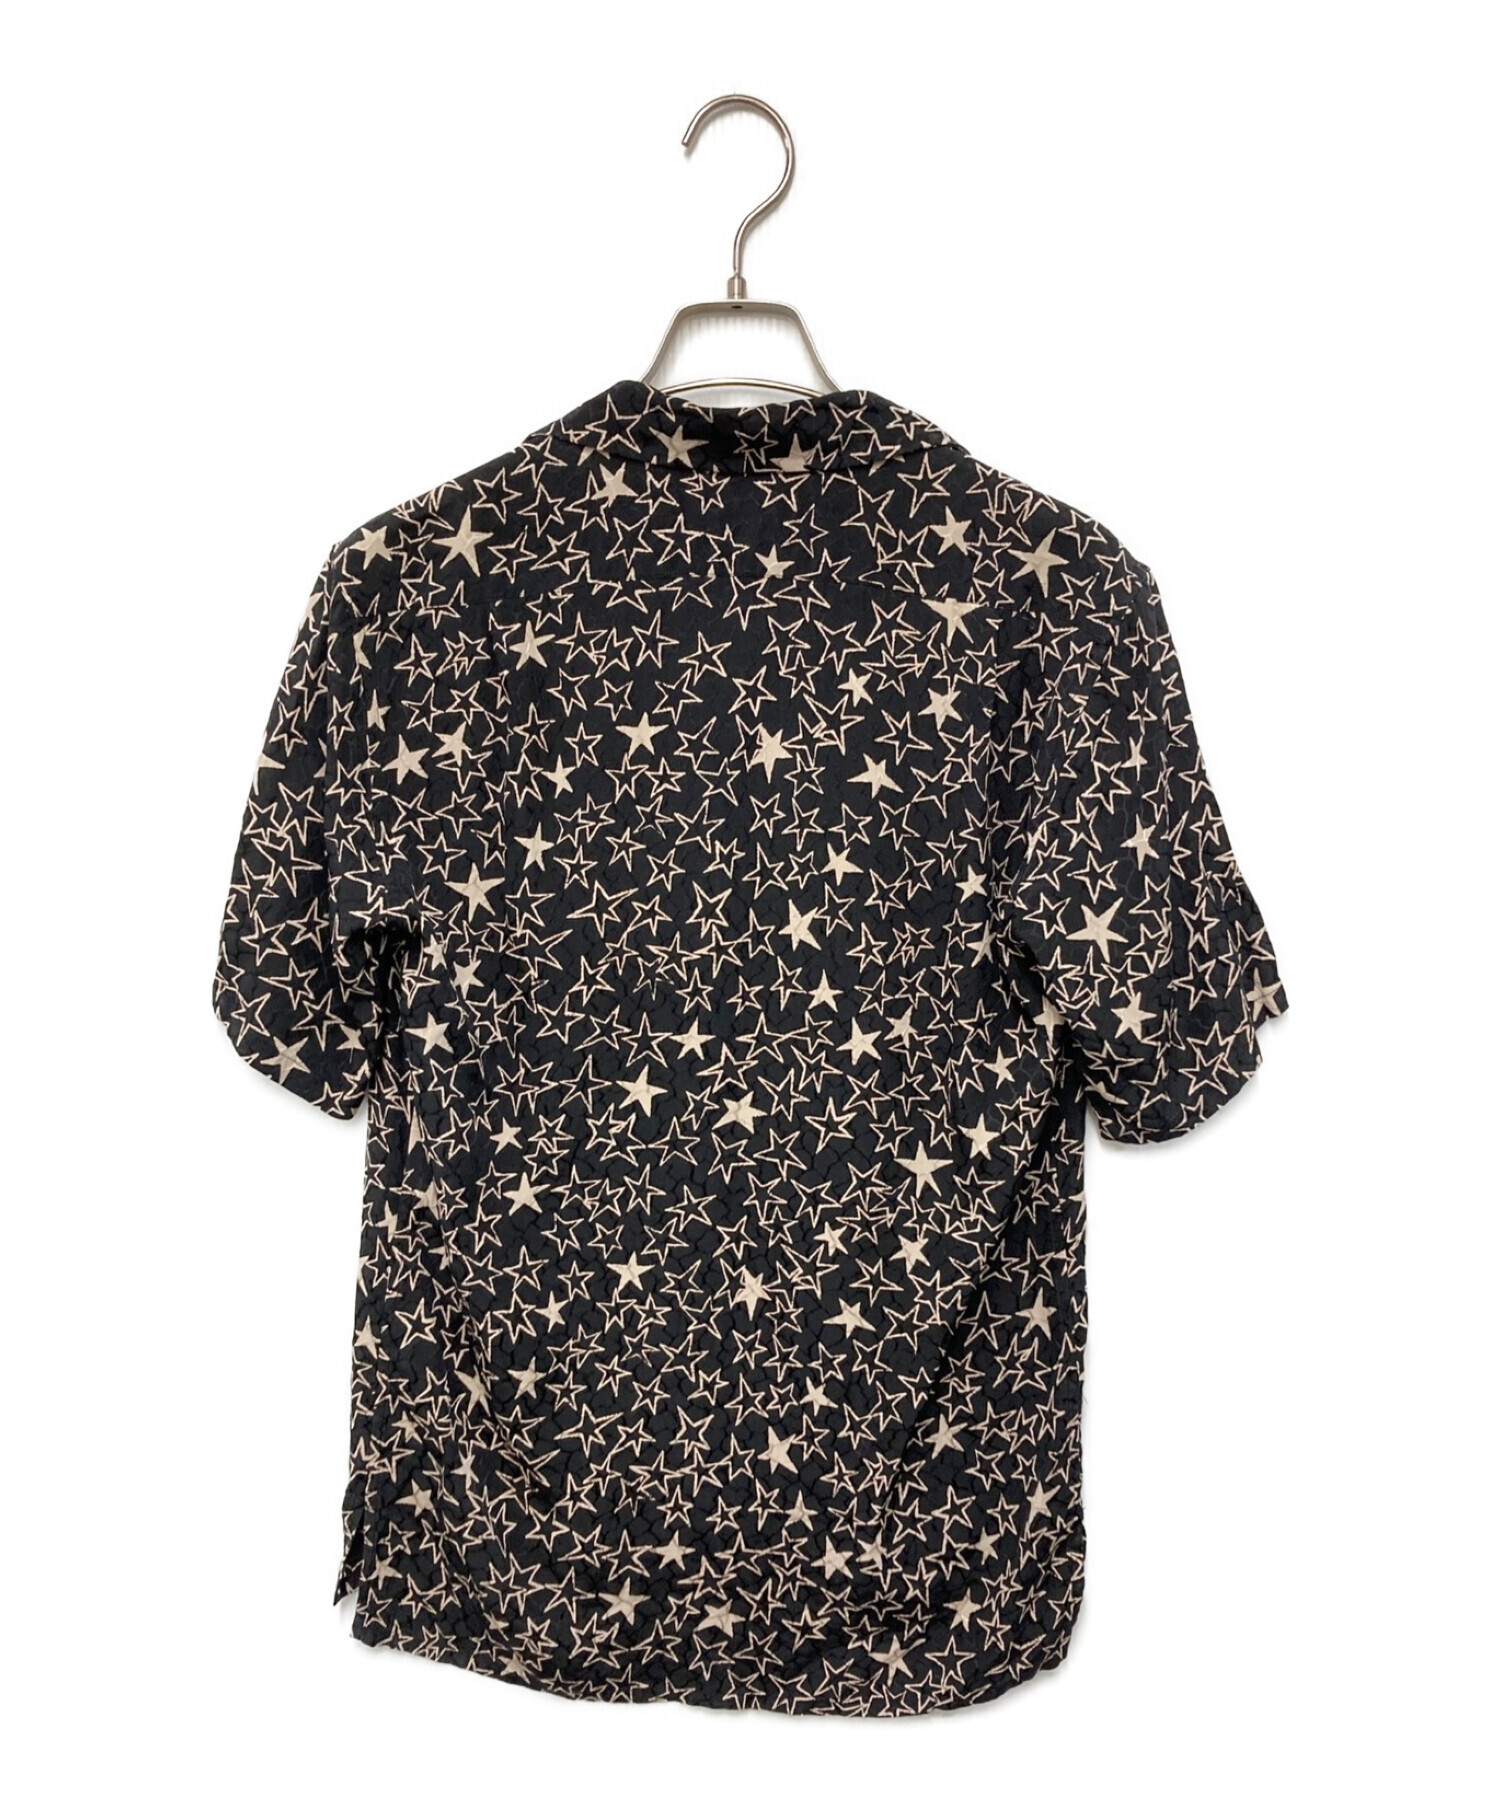 Saint Laurent Paris (サンローランパリ) SILK STAR Shirt シルクスターシャツ ブラック サイズ:36